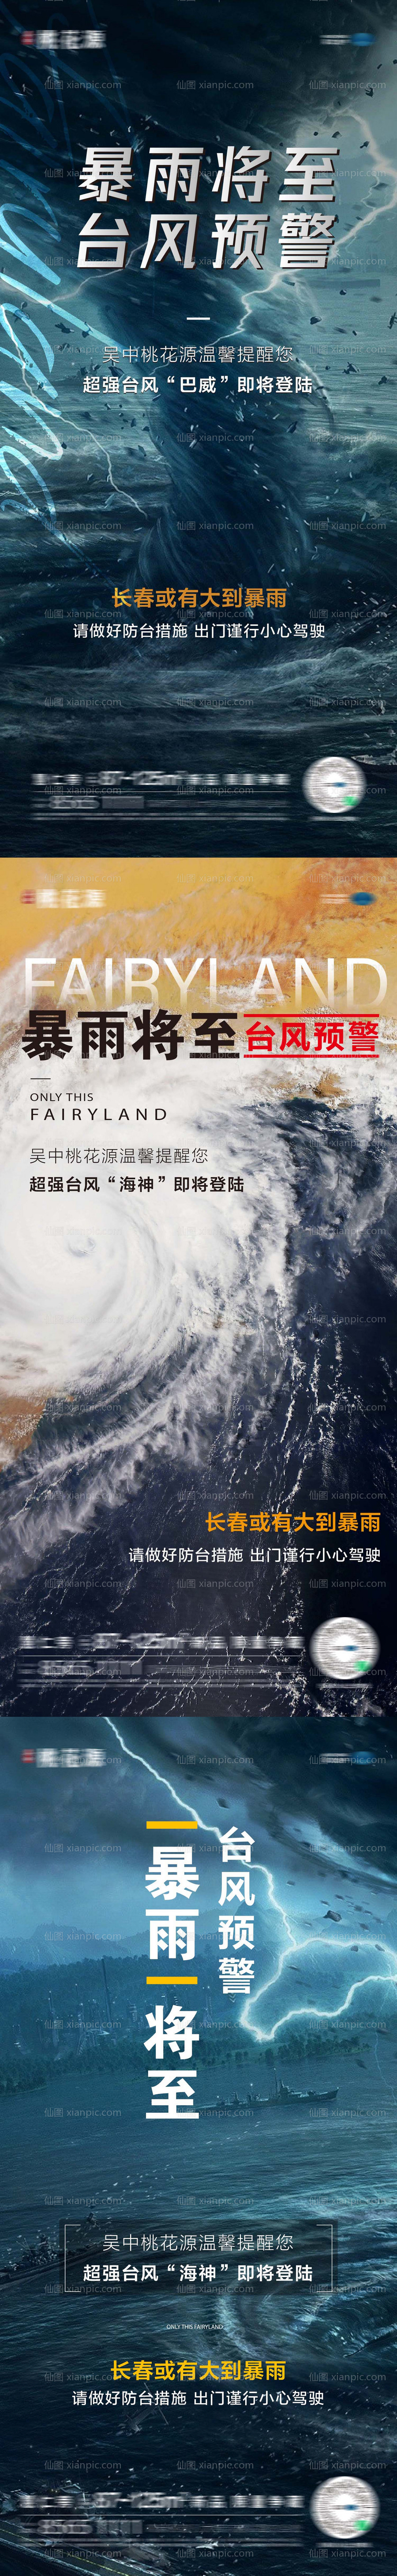 素材乐-台风预警暴雨海报